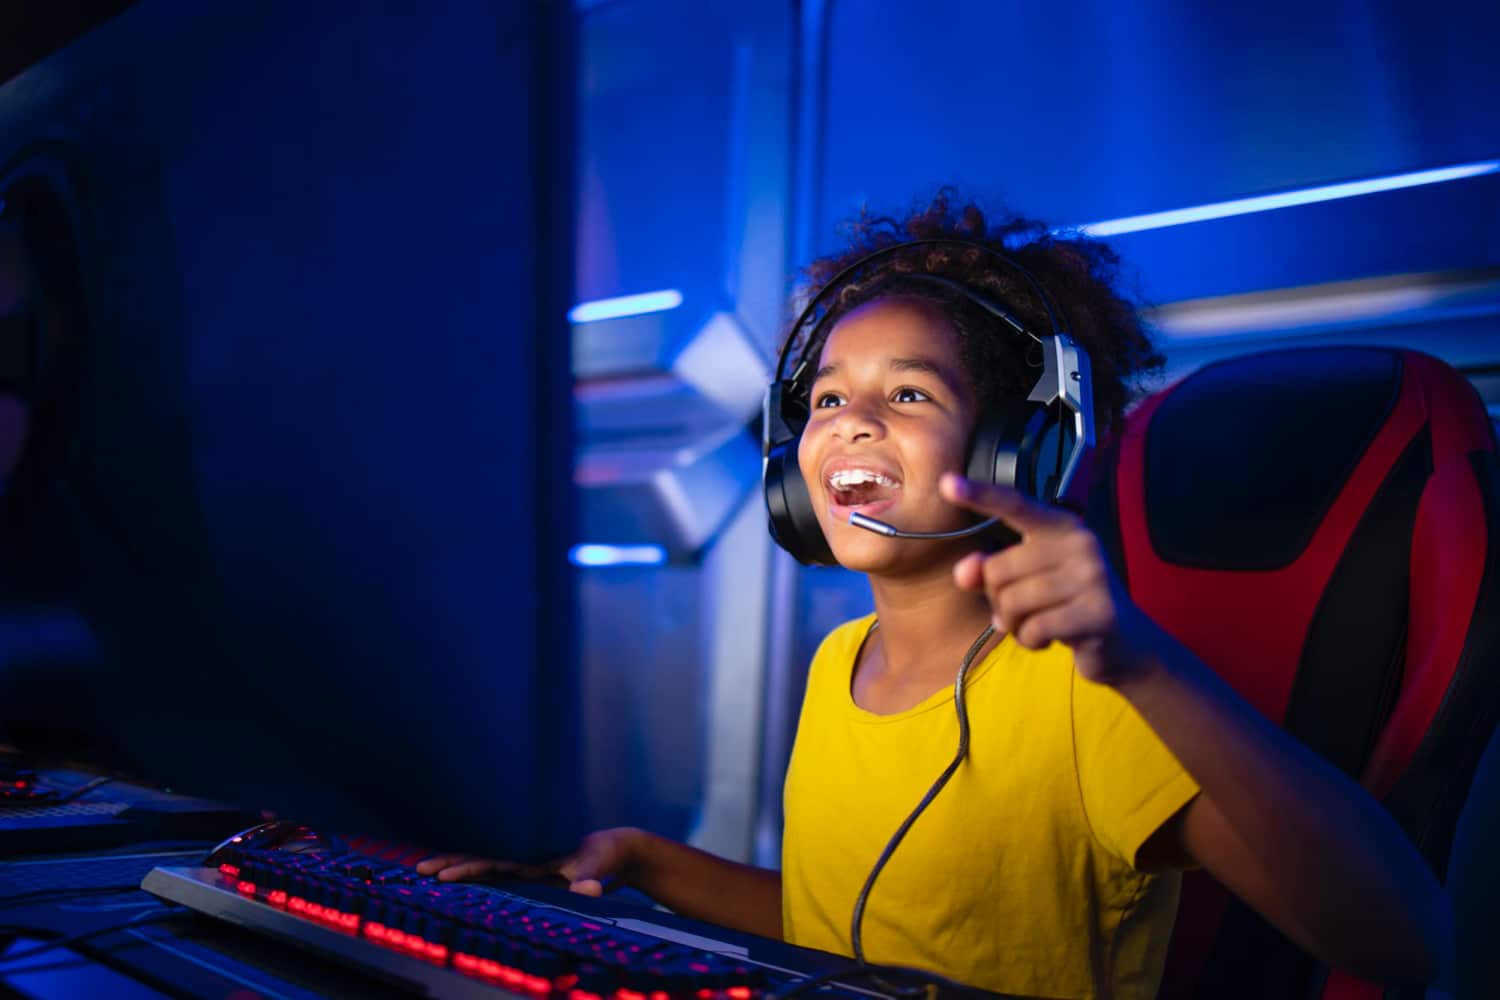 Niños “gamers” muestran mejor rendimiento cognitivo, revela estudio